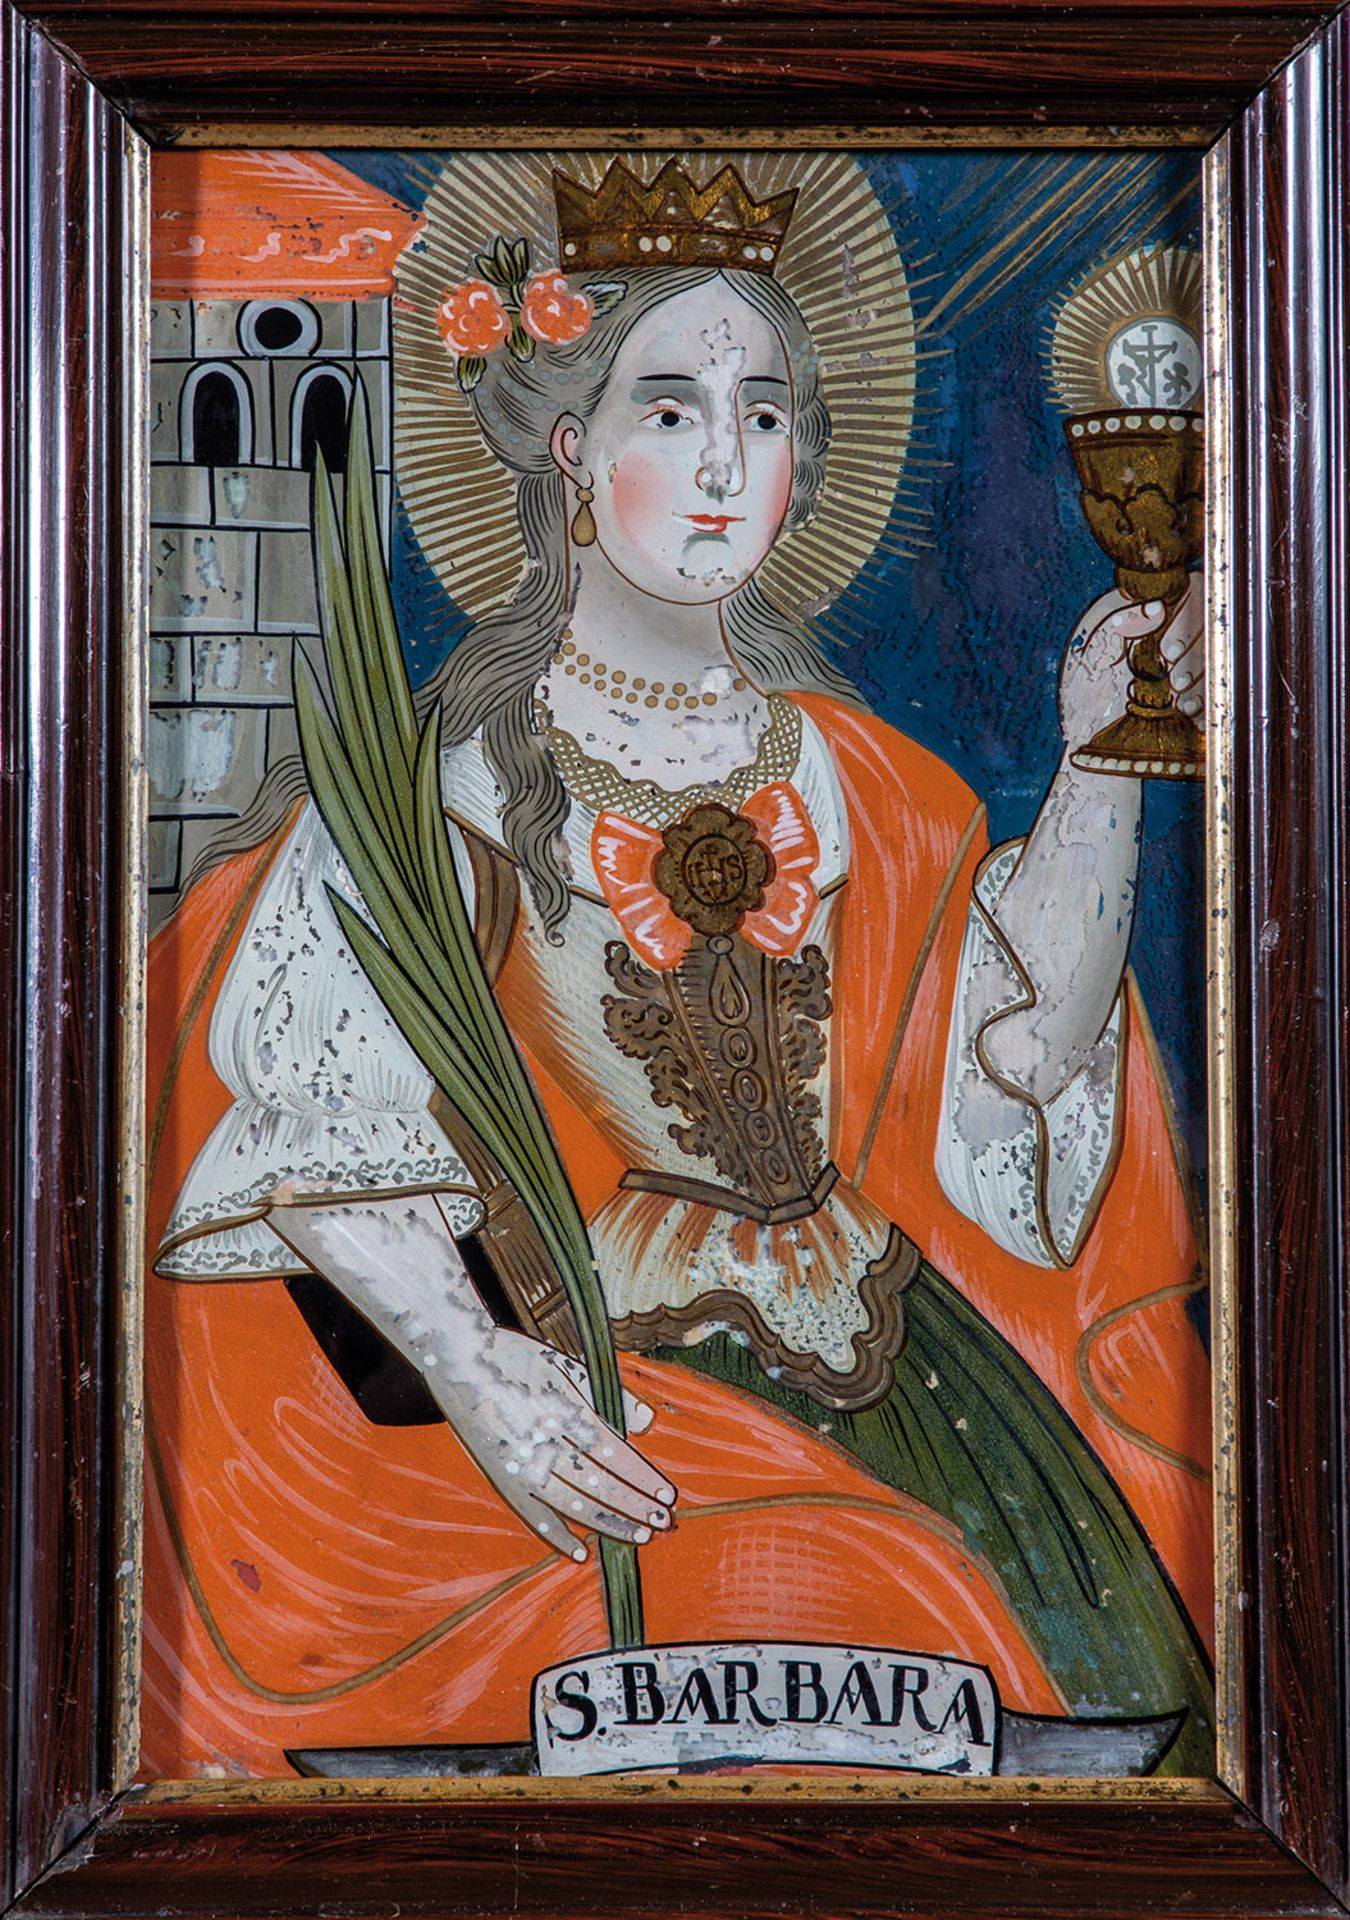 Hinterglasbild mit der Heiligen Barbara